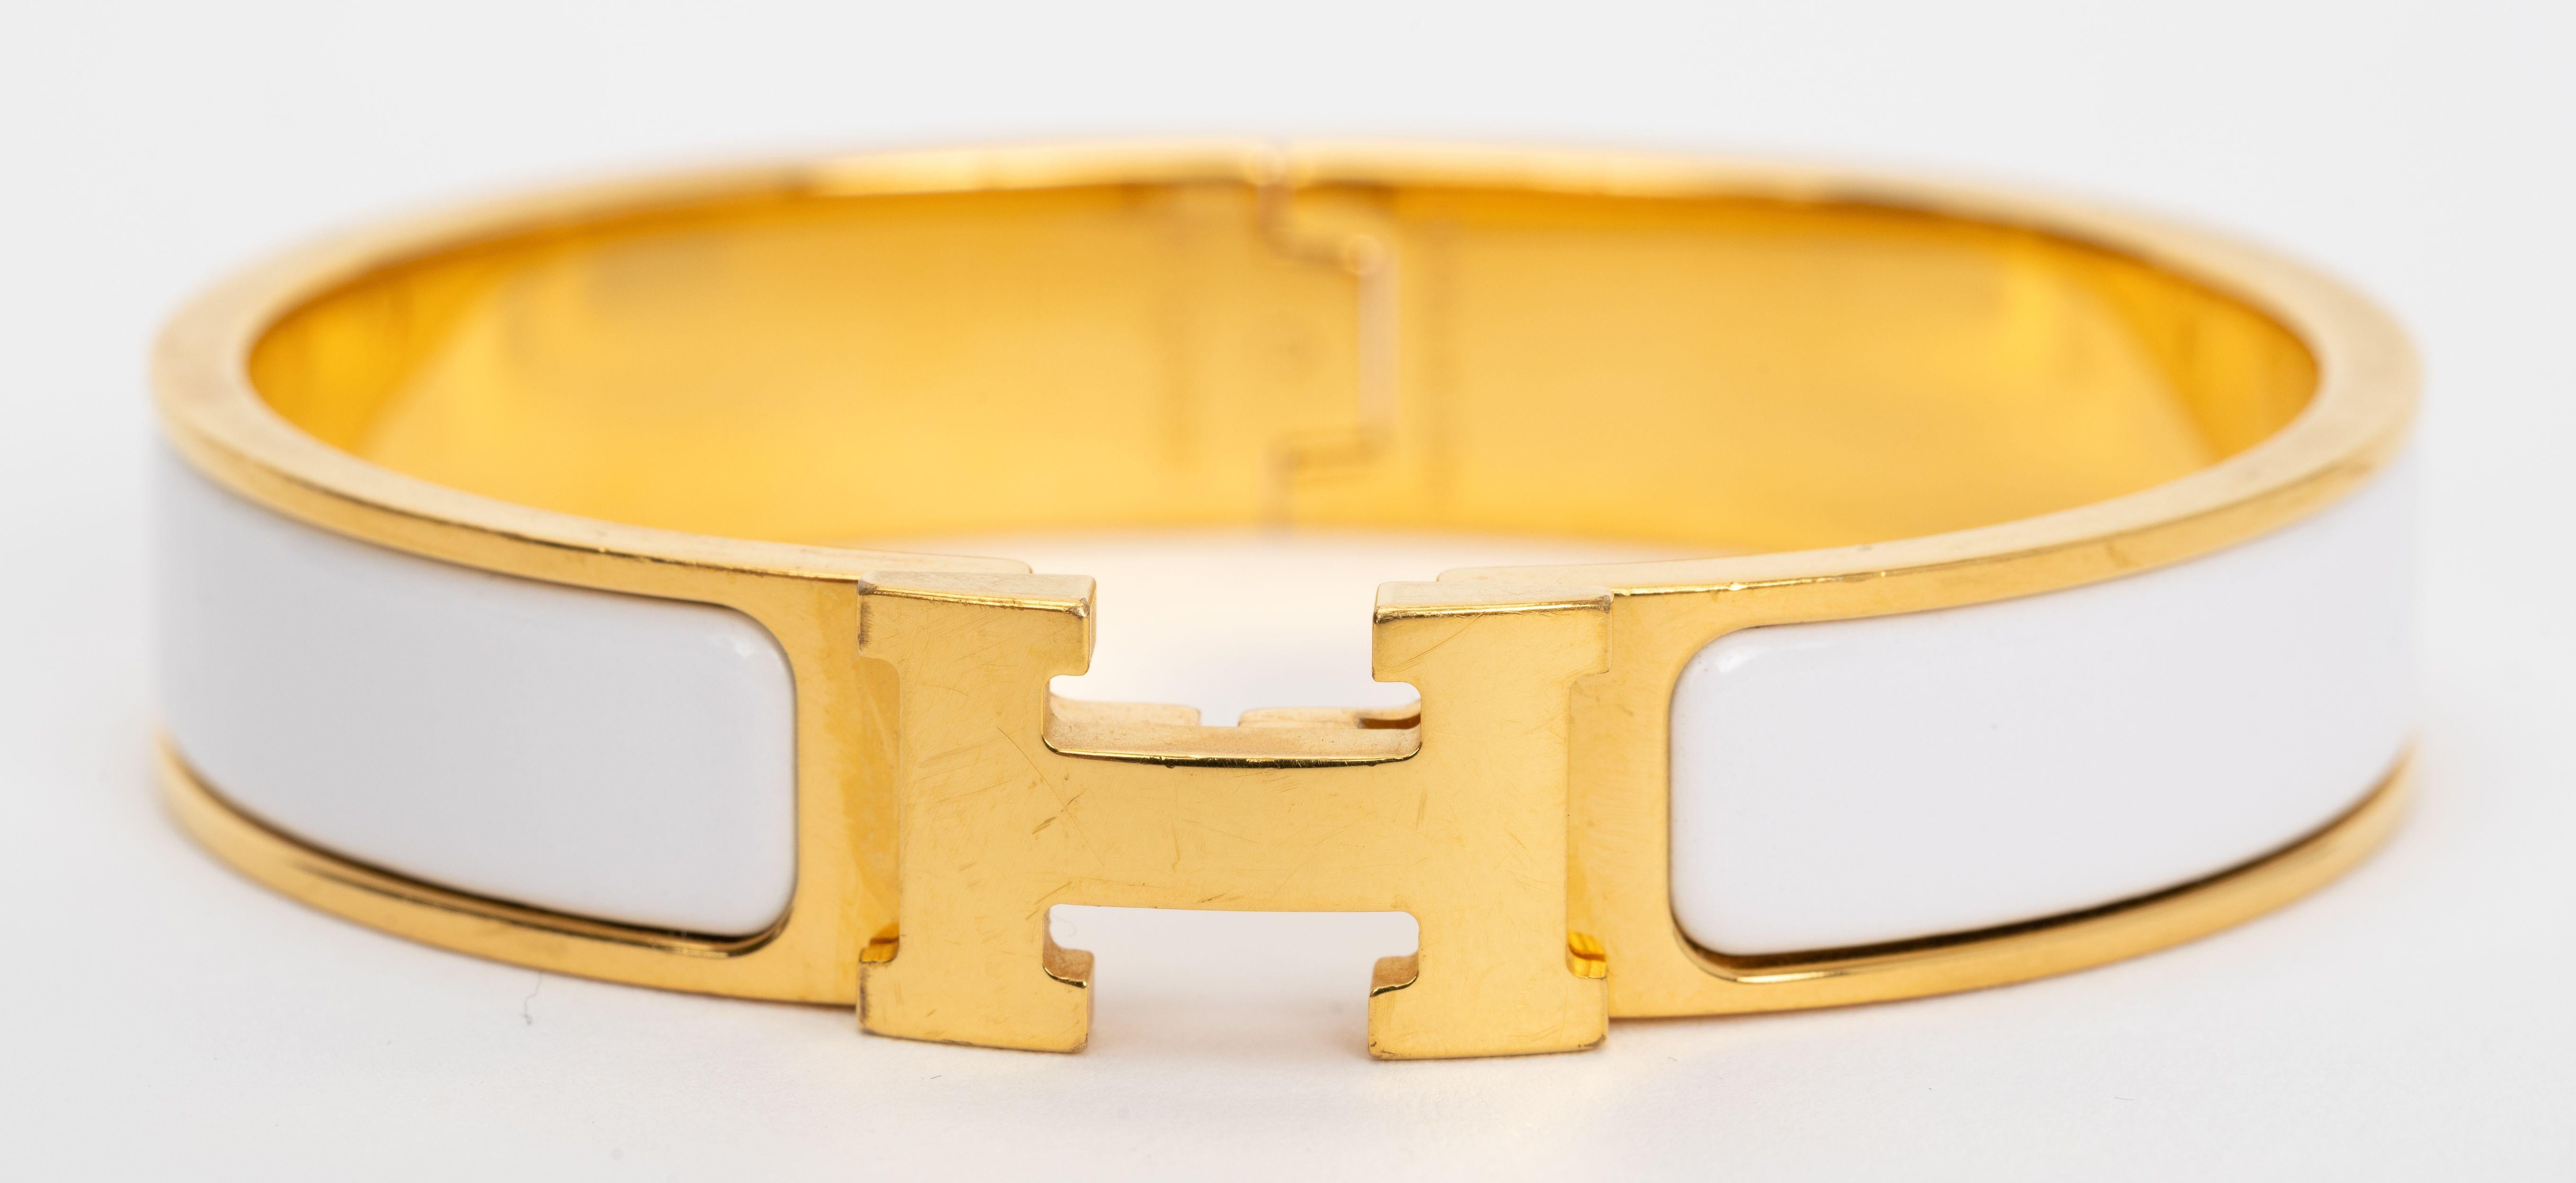 Le Clic Clac H d'Hermes, bracelet étroit en émail blanc avec des attaches plaquées or.
Taille PM, neuf, non porté, livré avec une pochette en velours.